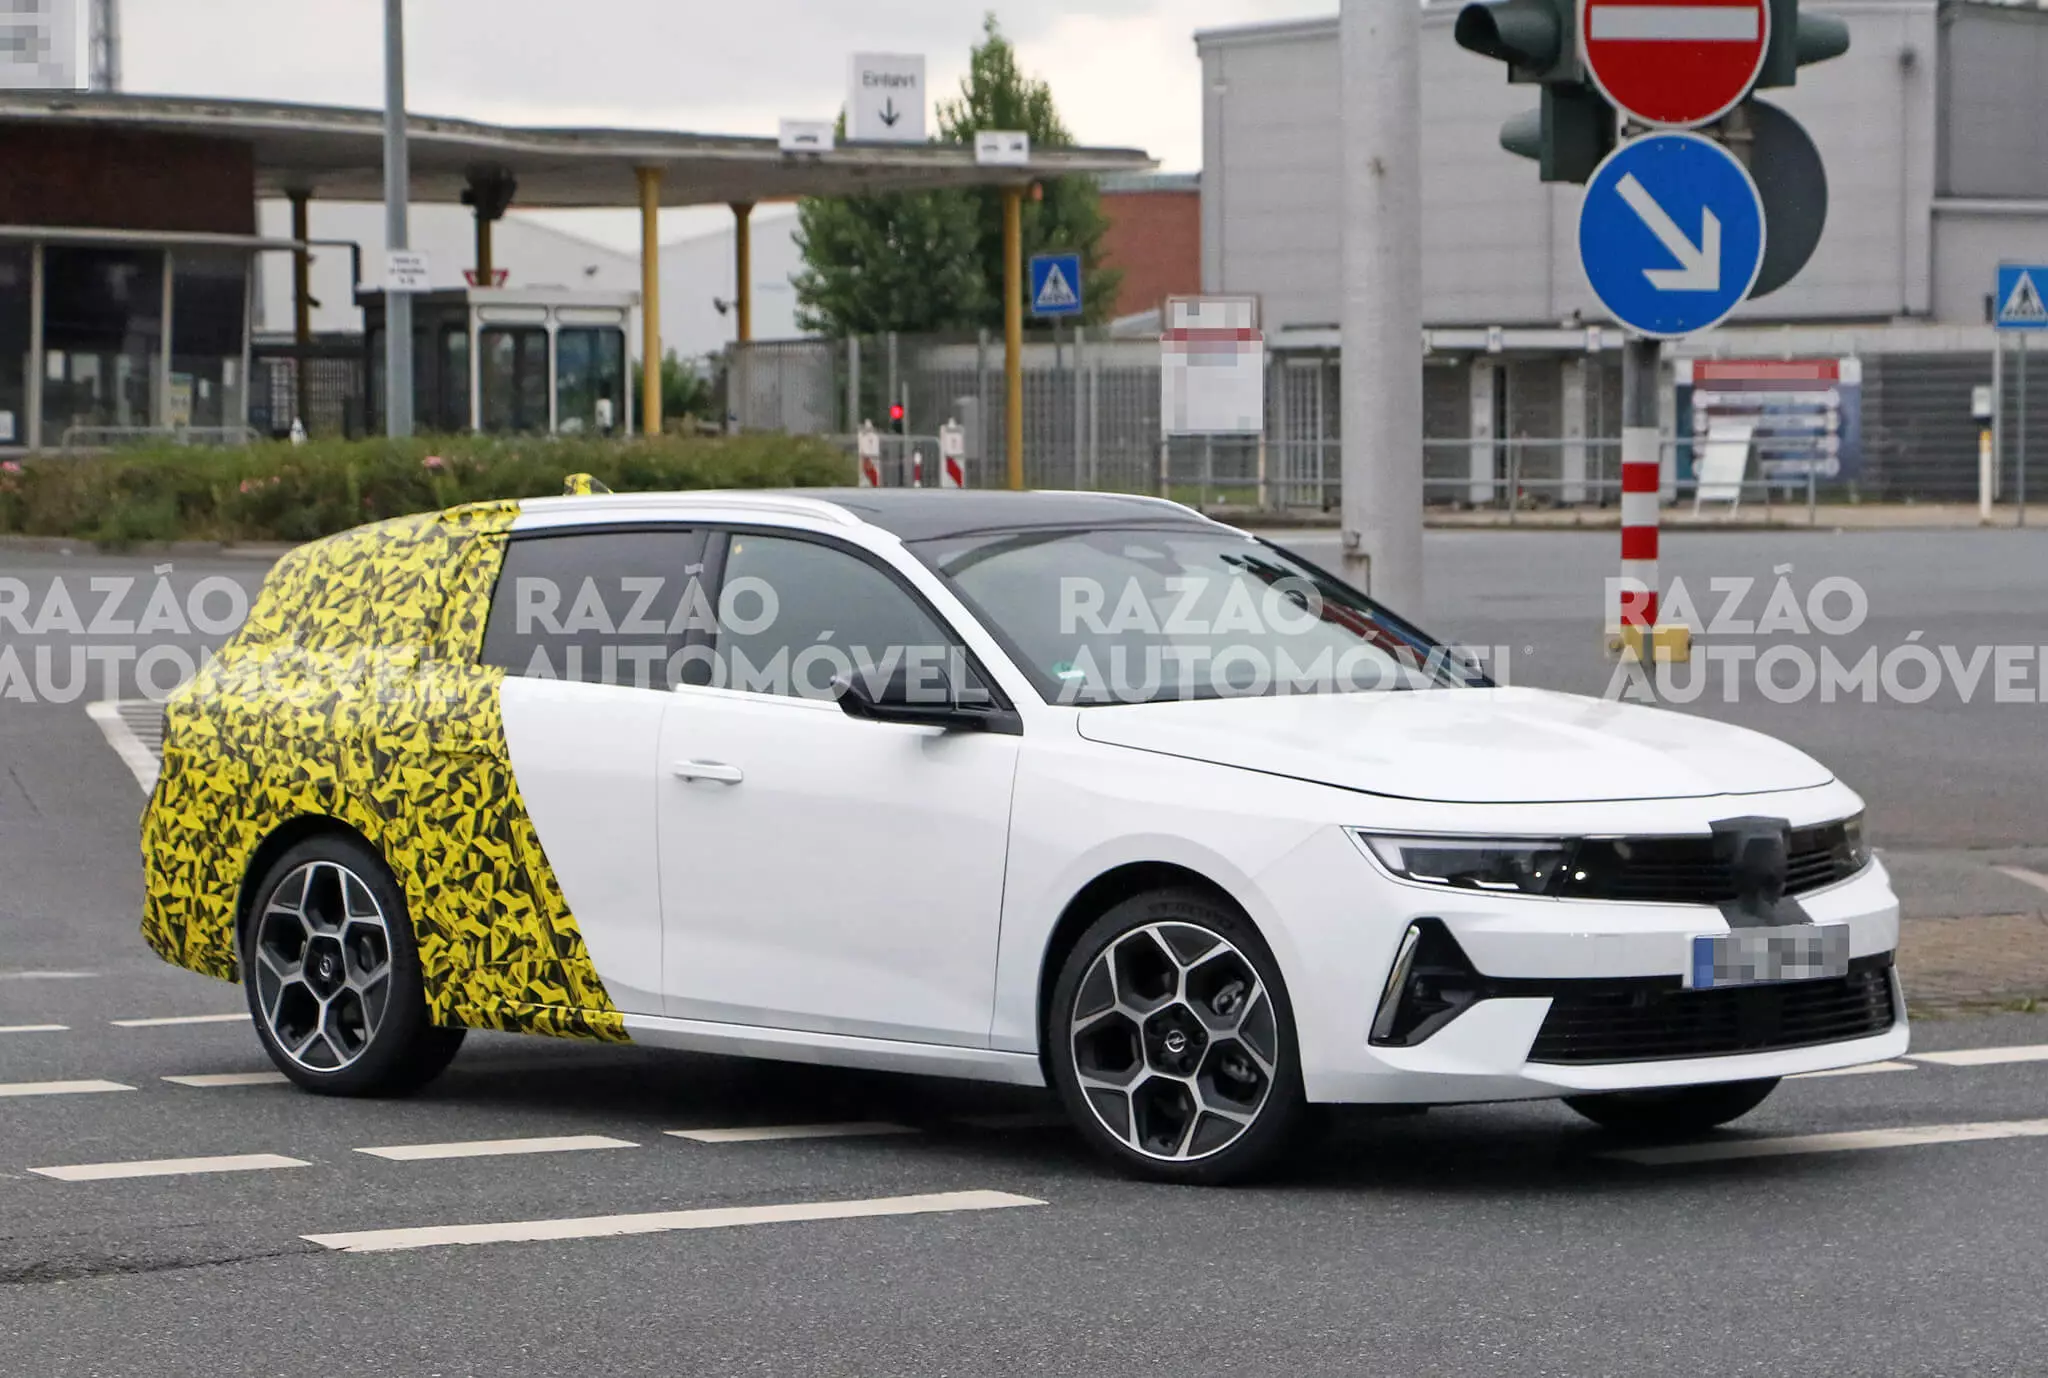 Špionážna dodávka Opel Astra